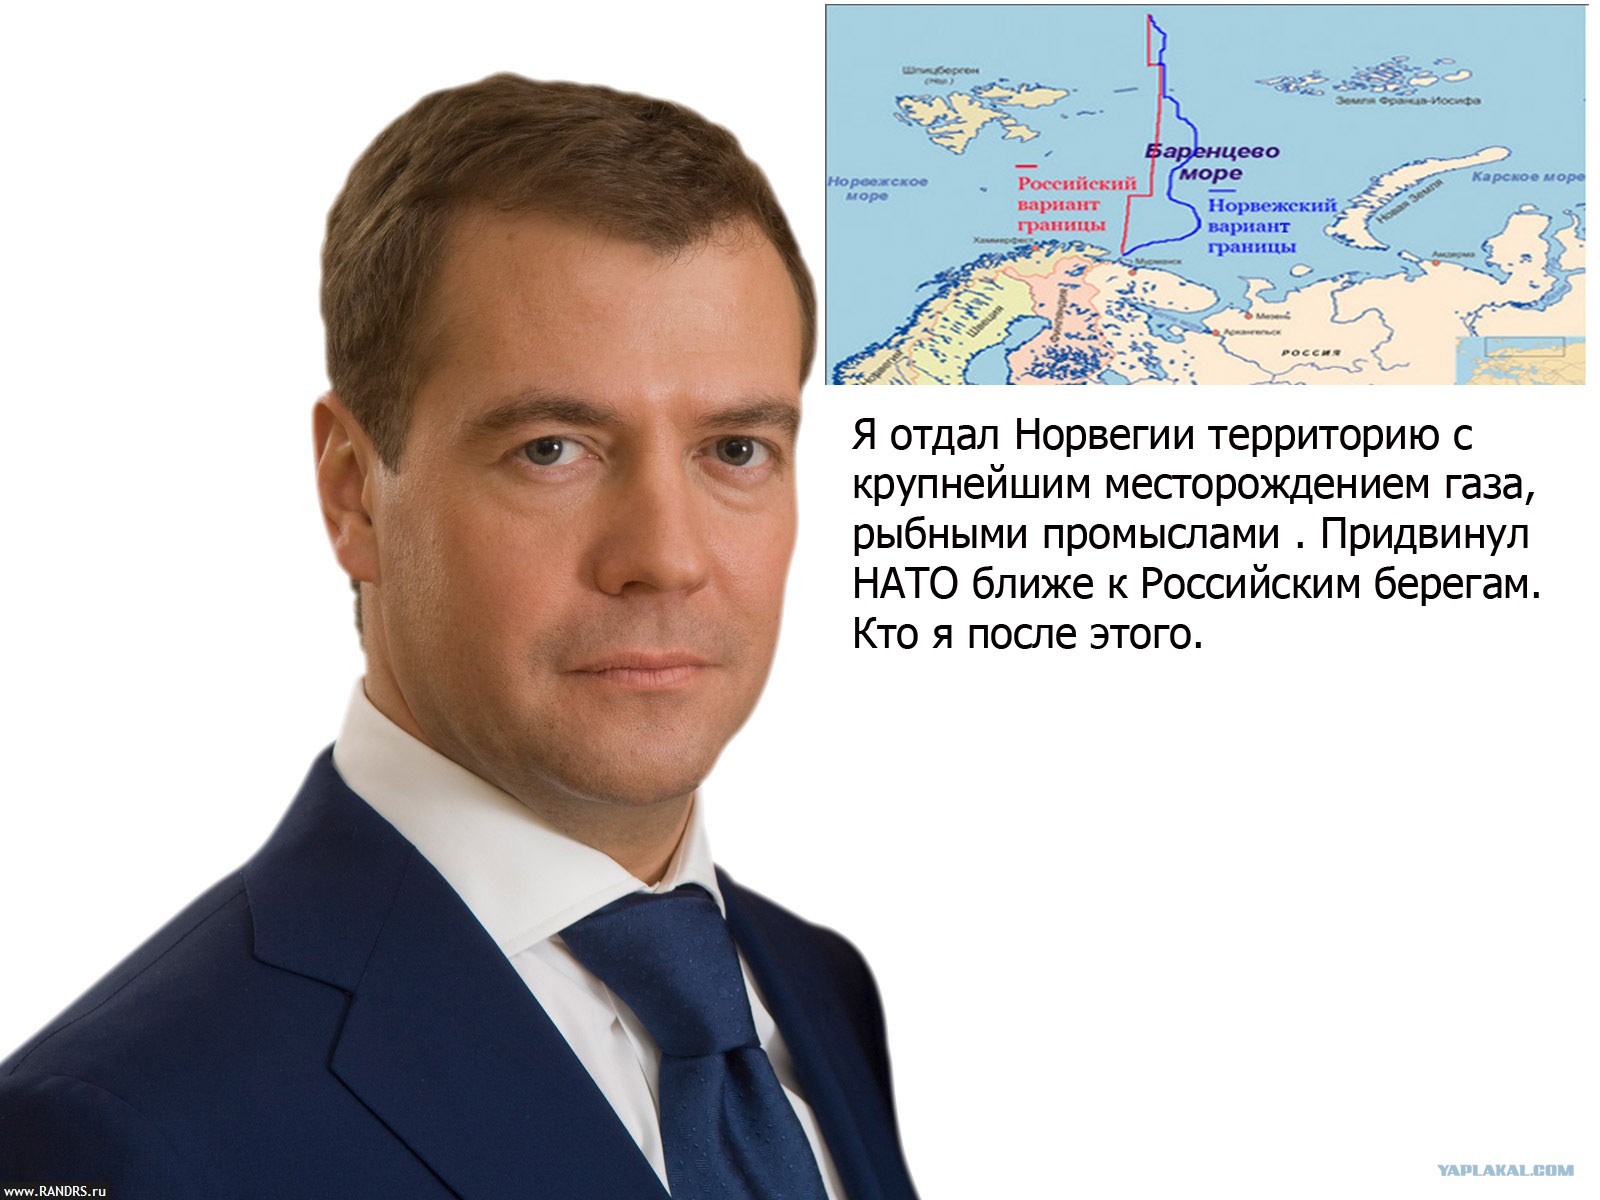 Медведев показал карту россии. Территория отданная Норвегии Медведевым. Шельф Норвегии Медведев. Медведев отдал Норвегии. Медведев отдал Норвегии шельф Баренцева моря.